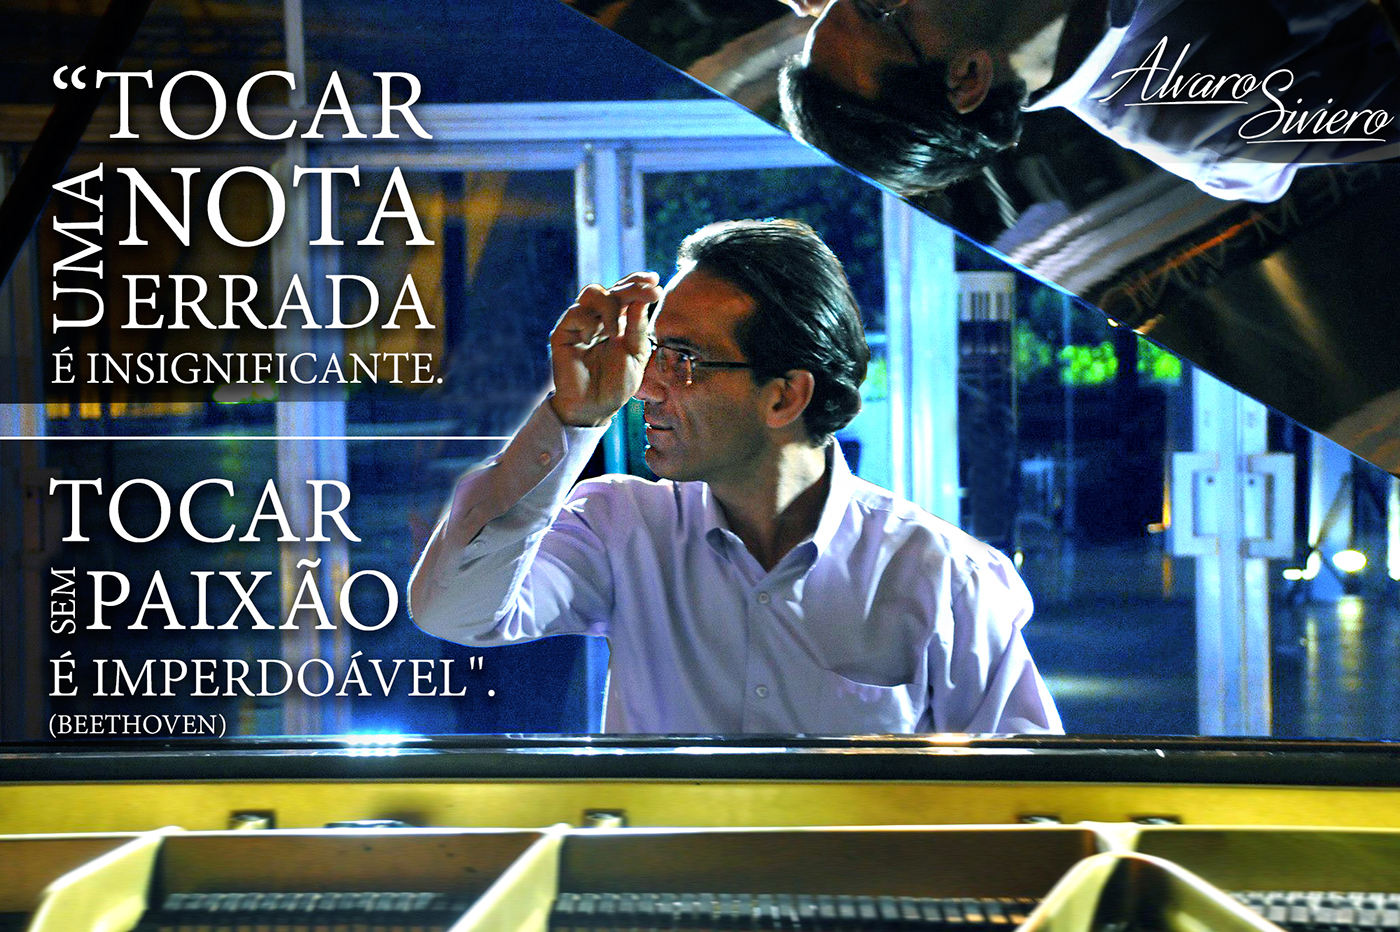 Piano Pianist Alvaro Siviero orchestra